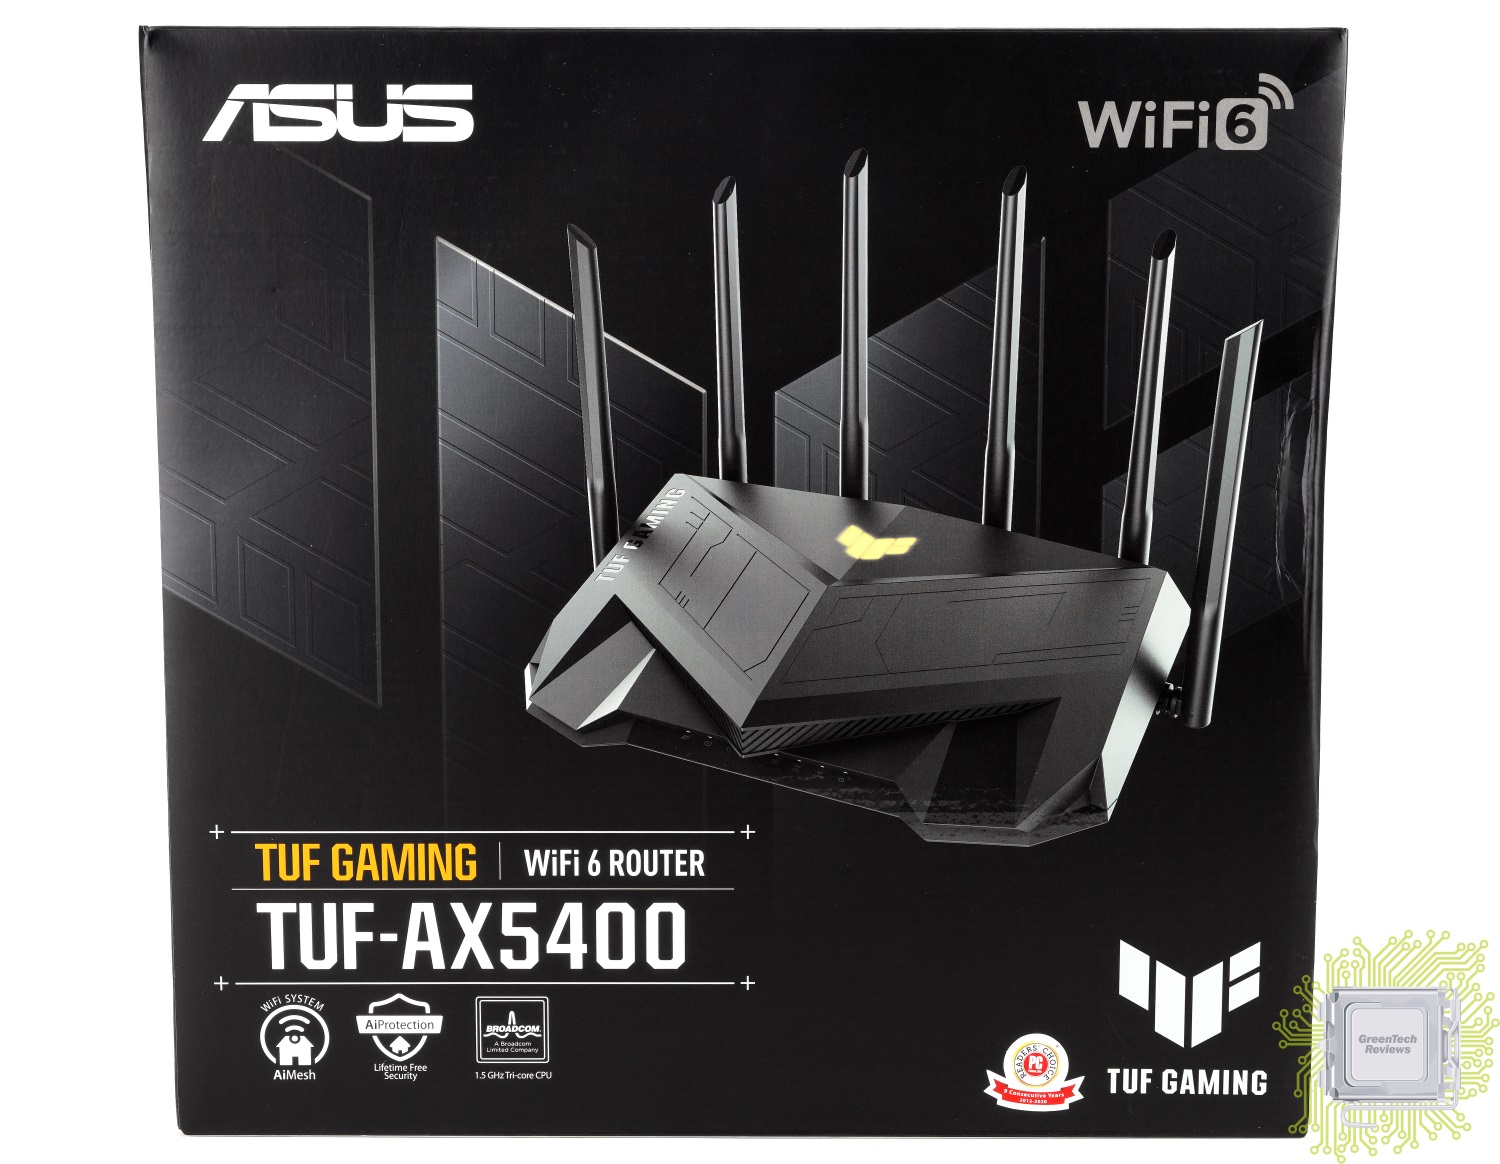 Tuf gaming ax5400. ASUS TUF-ax5400. ASUS RT-ax5400. Wi-Fi роутер ASUS TUF Gaming ax5400. ASUS TUF-ax5400, ax5400.